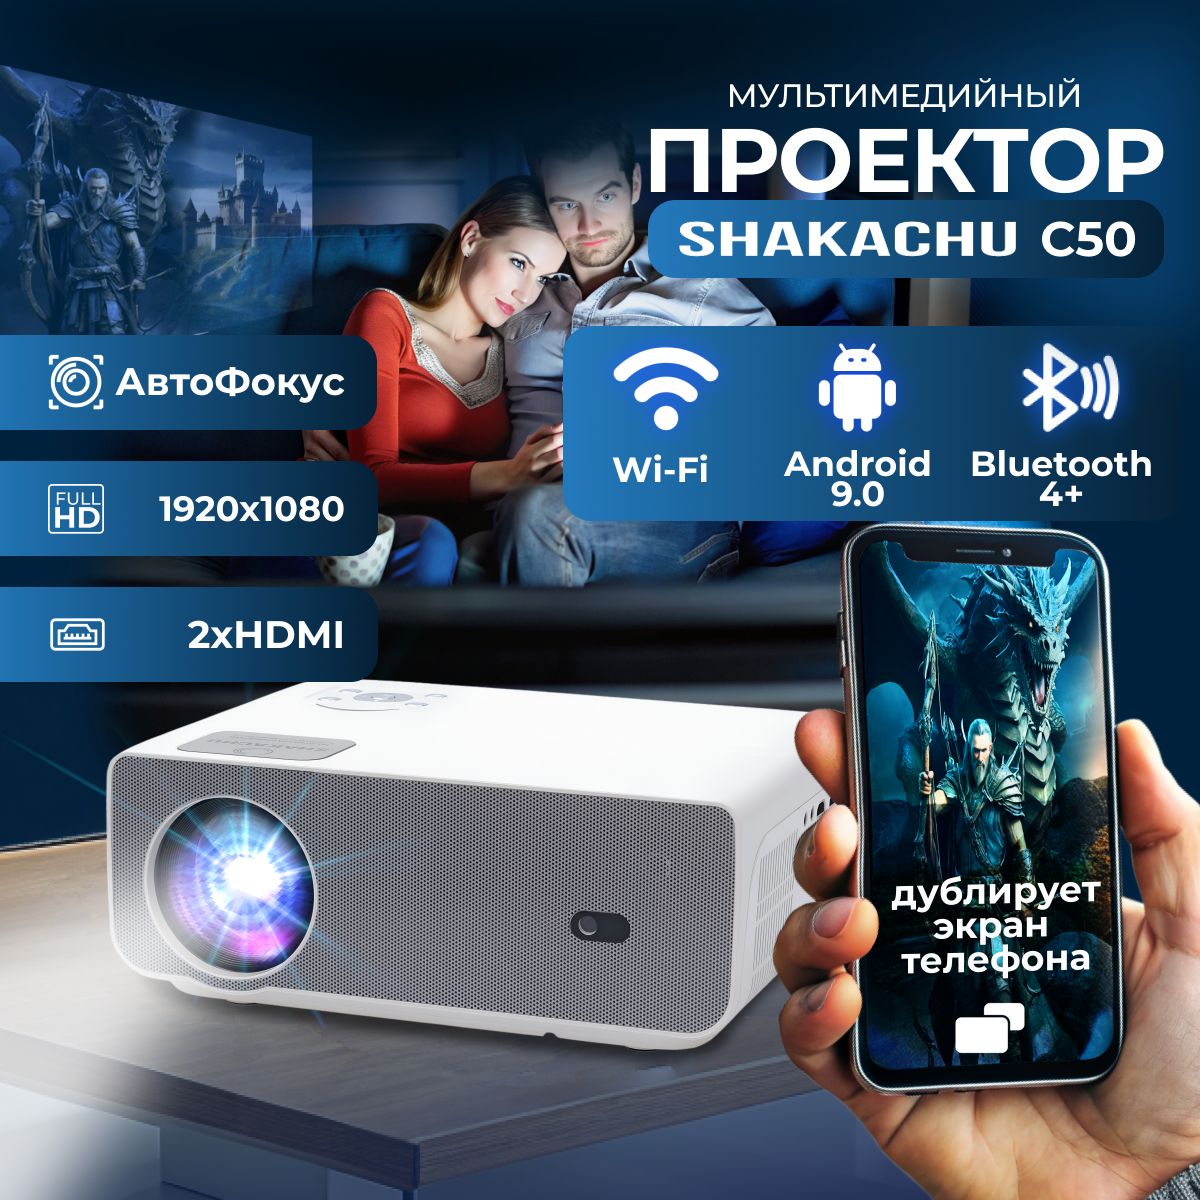 ПроектордляфильмовShakachuC50савтофокусом/Android/Wi-Fi/Bluetooth/1920x1080/дублируетэкрантелефона/портативныйпроектор/проектордляфильмовдомашний